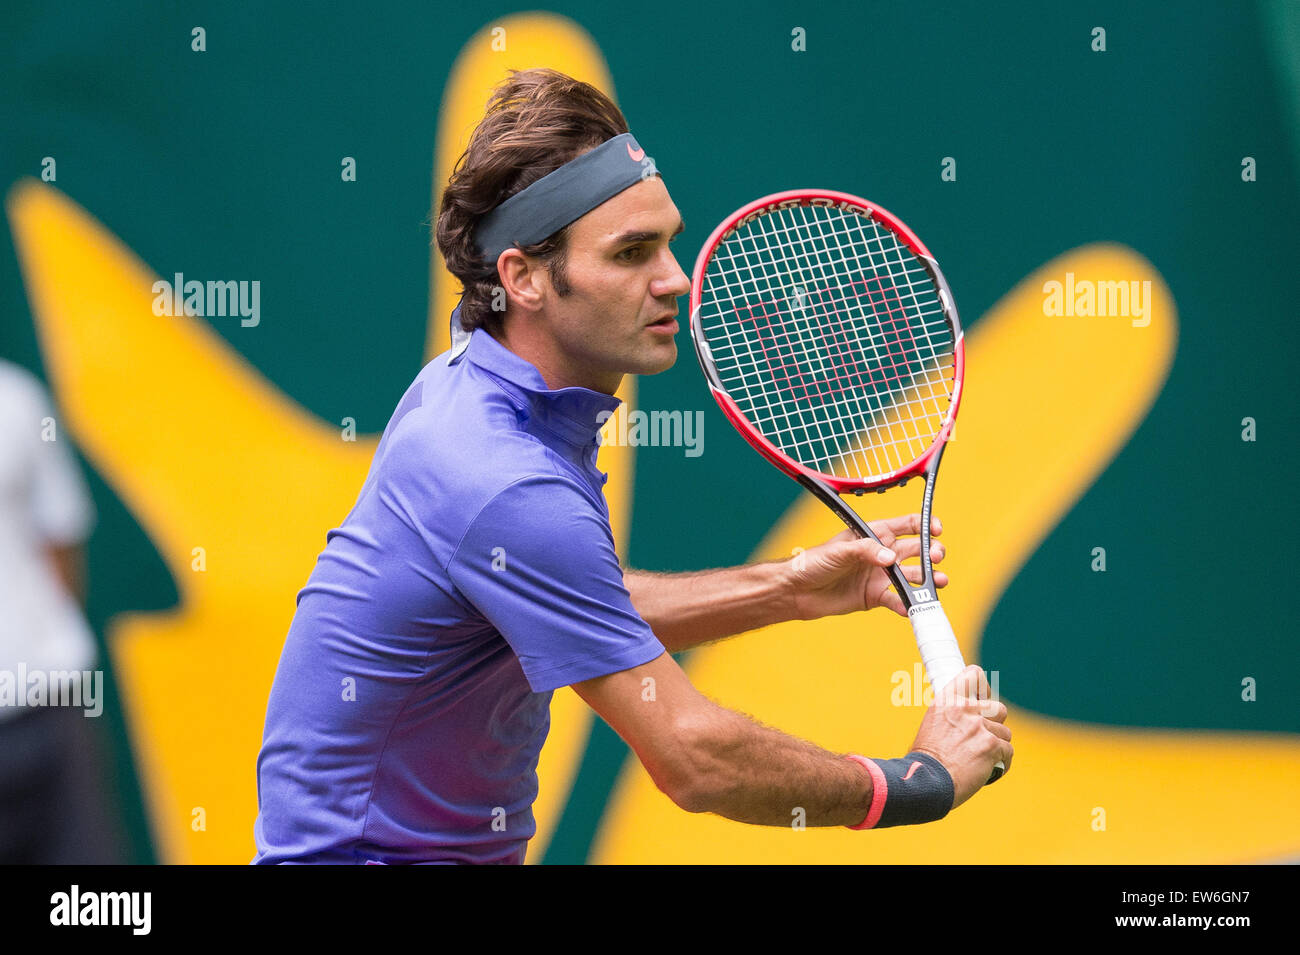 Halle, Germania. 17 Giugno, 2015. Roger Federer in azione durante il round di 16 match contro Ernests GULBIS della Lettonia durante l'ATP torneo di tennis a Halle, Germania, 17 giugno 2015. Foto: MAJA HITIJ/dpa/Alamy Live News Foto Stock